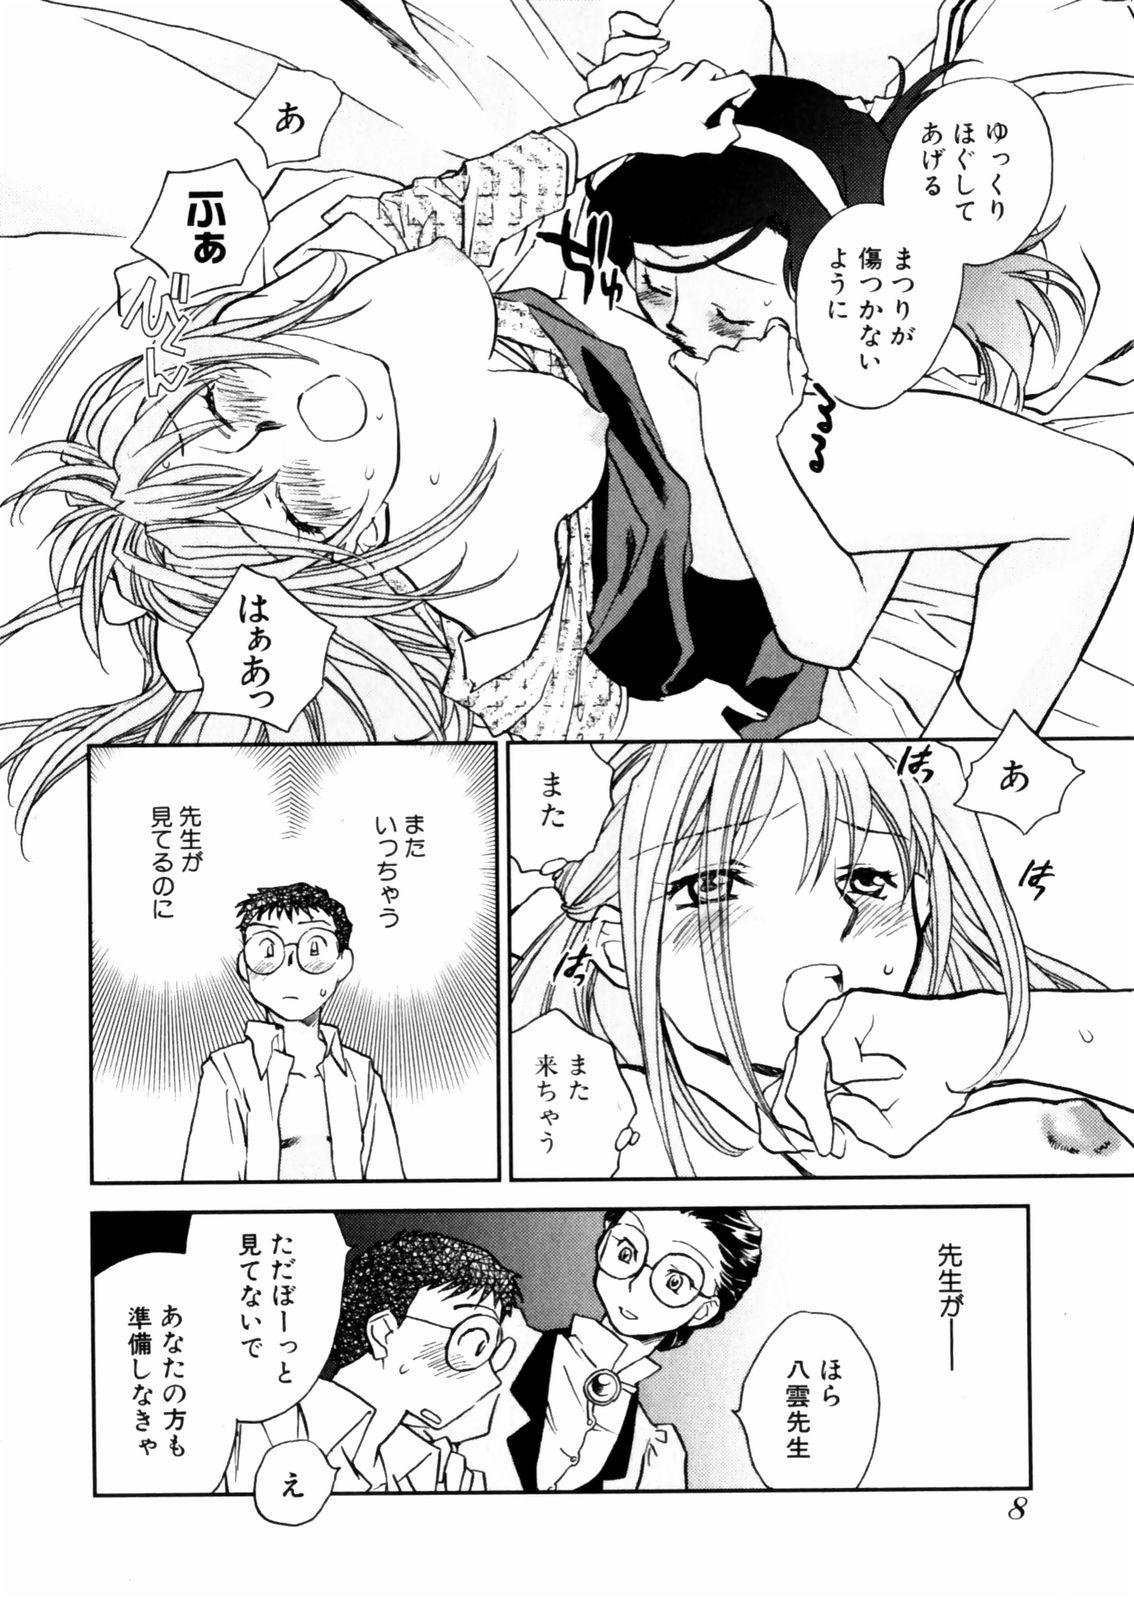 [Okano Ahiru] Hanasake ! Otome Juku (Otome Private Tutoring School) Vol.2 9